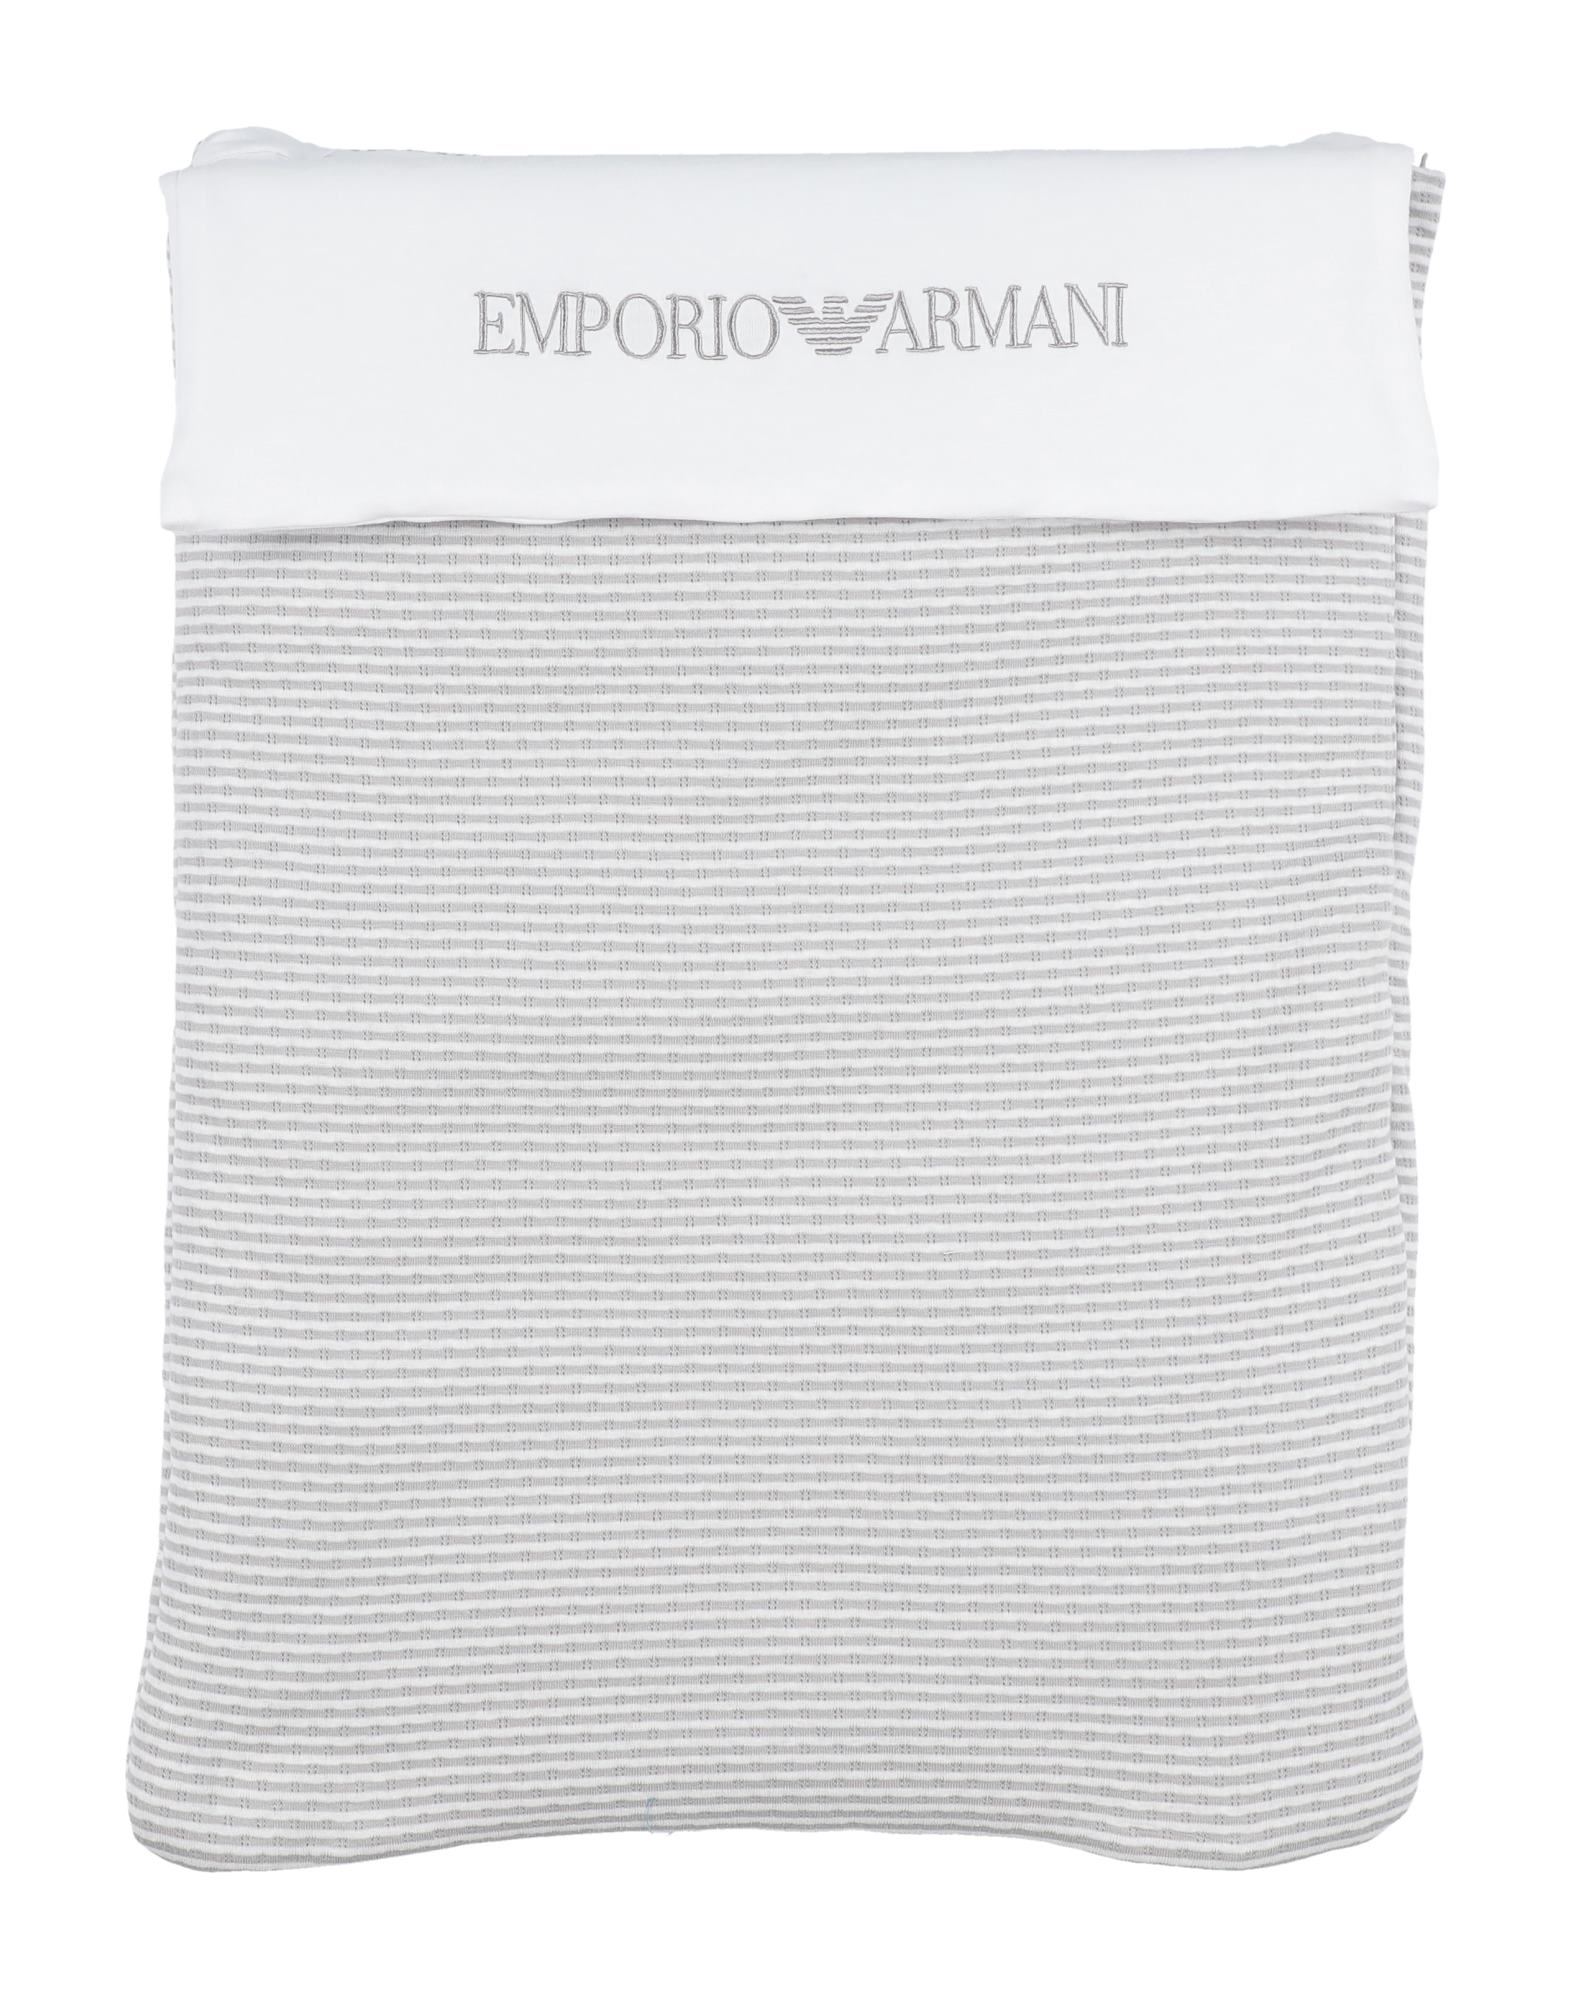 EMPORIO ARMANI Sleeping bags - Item 51127639